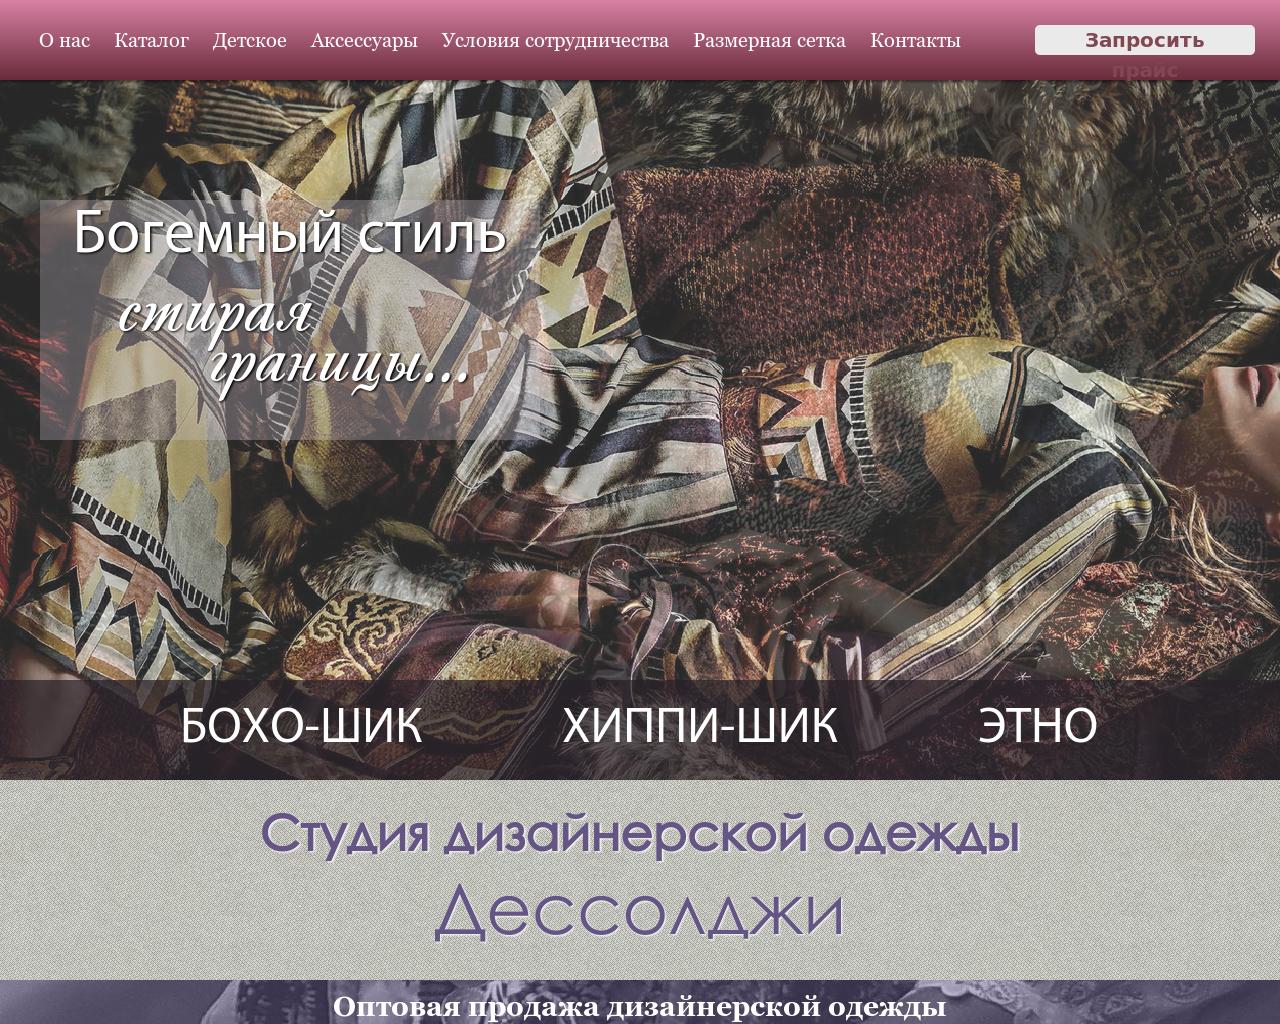 Изображение сайта dessolgi.ru в разрешении 1280x1024